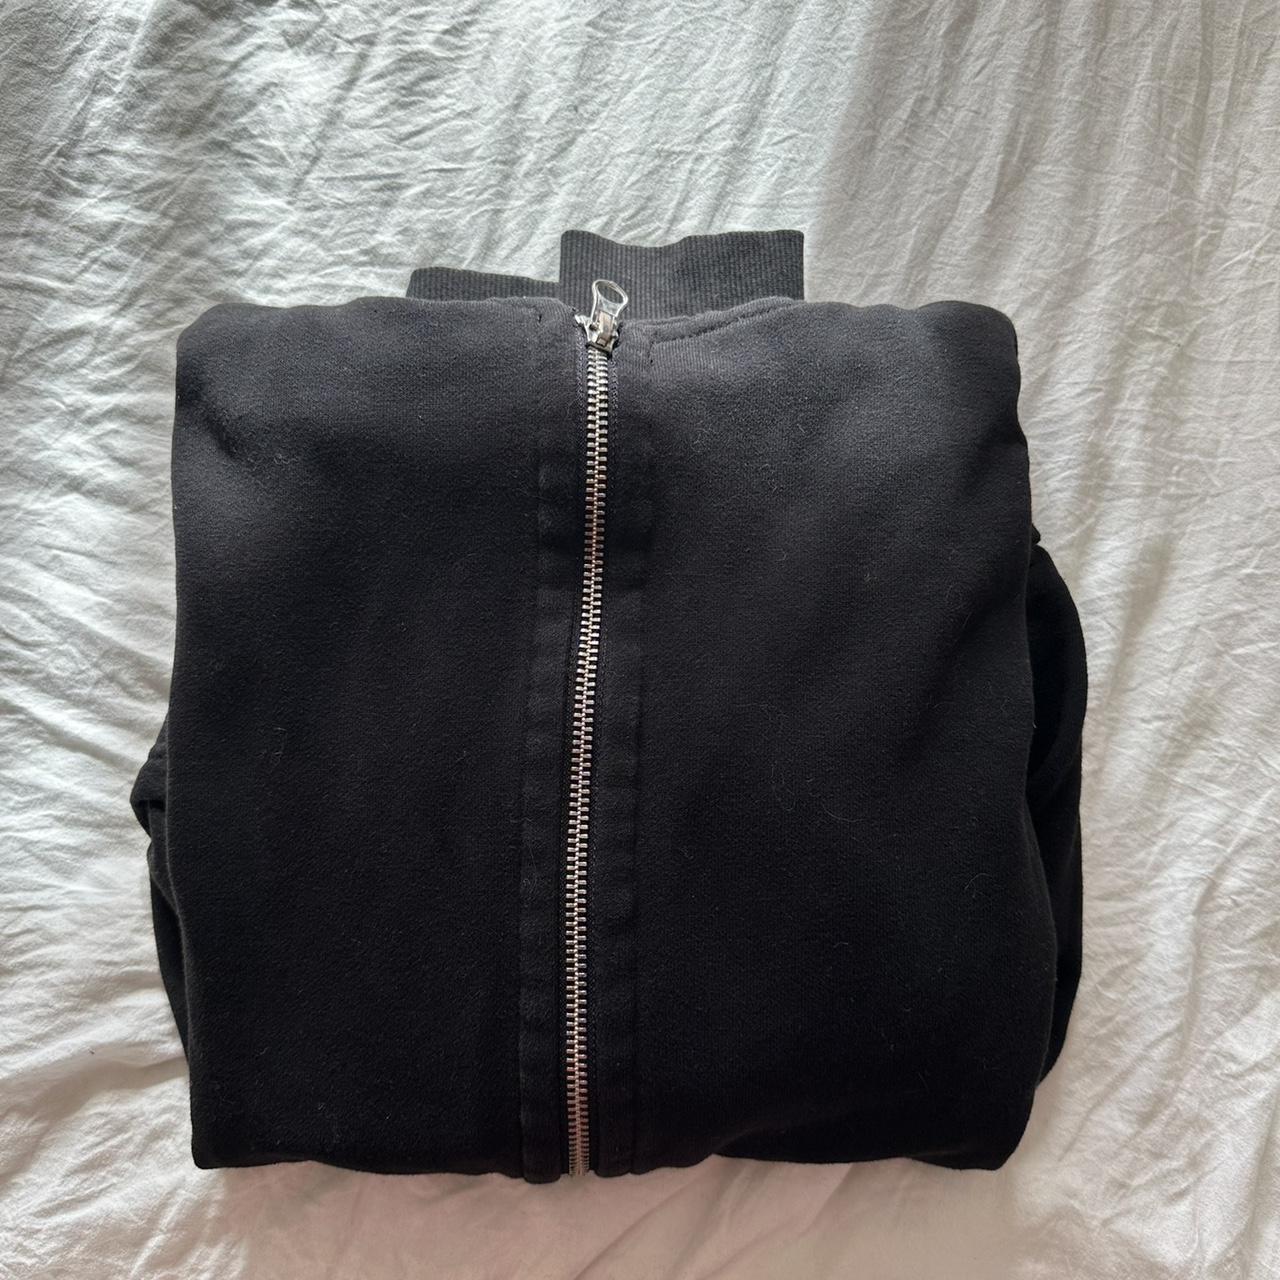 H & M black zip up hoodie - Depop